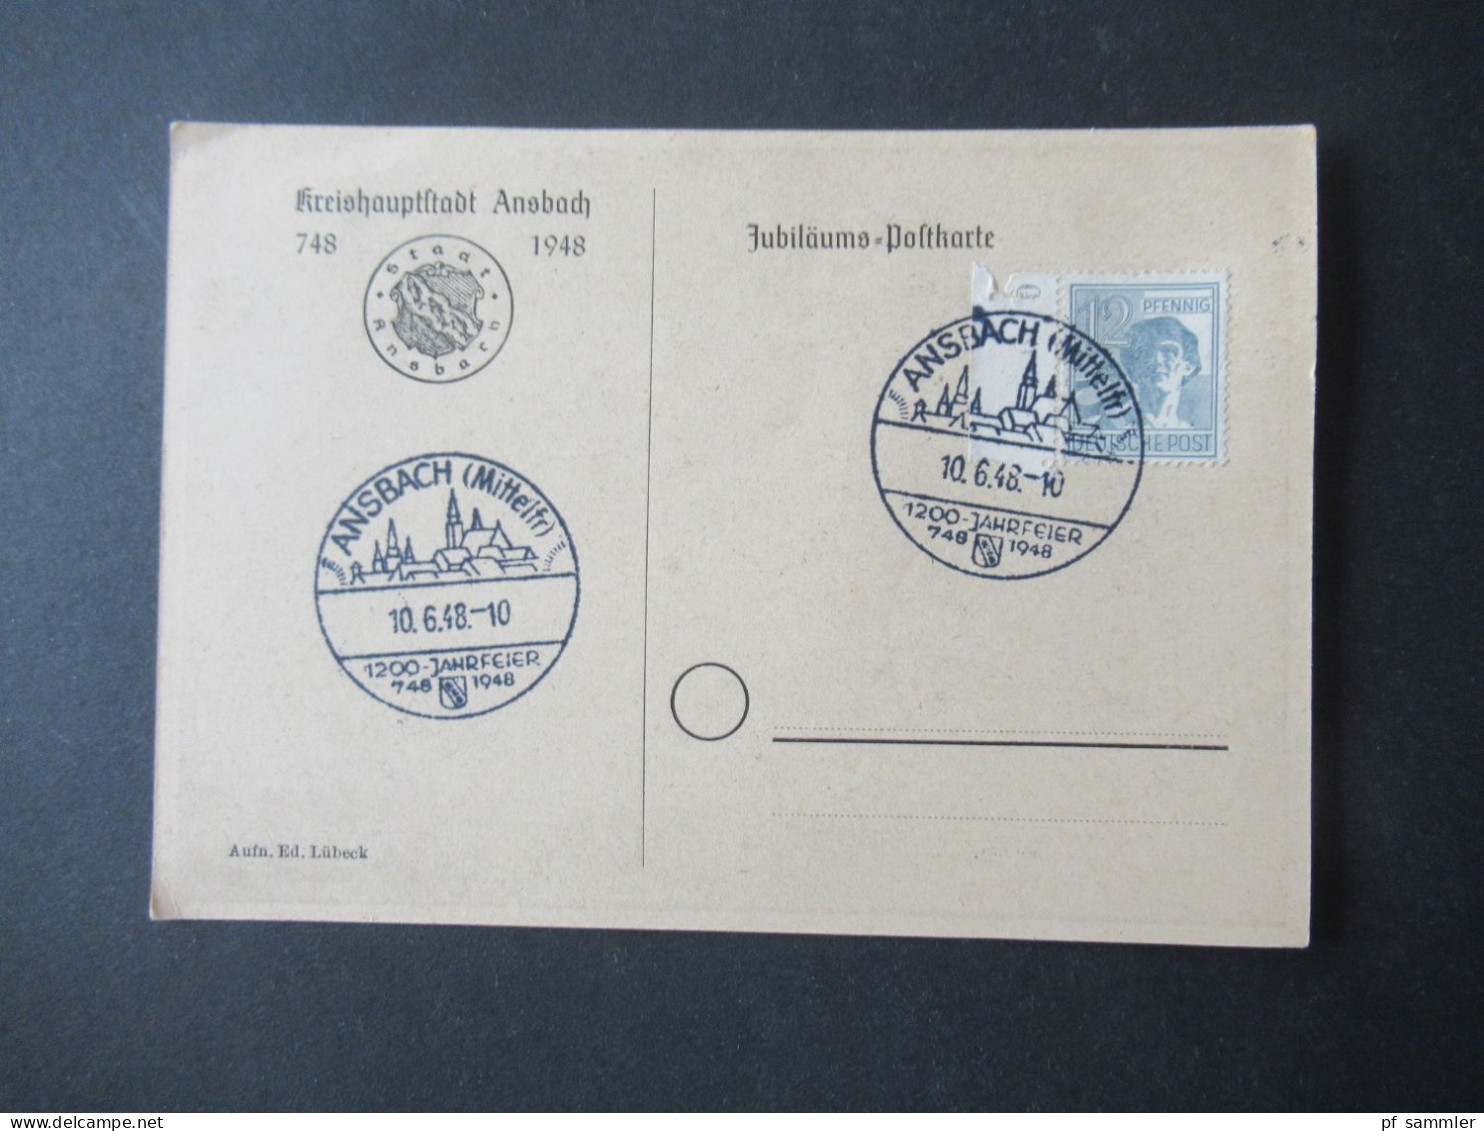 Kontrollrat 1948 PK Kreishauptstadt Ansbach Und Sonderstempel Ansbach (Mittelfr) 1200 Jahrfeier 748 - 1948 - Storia Postale